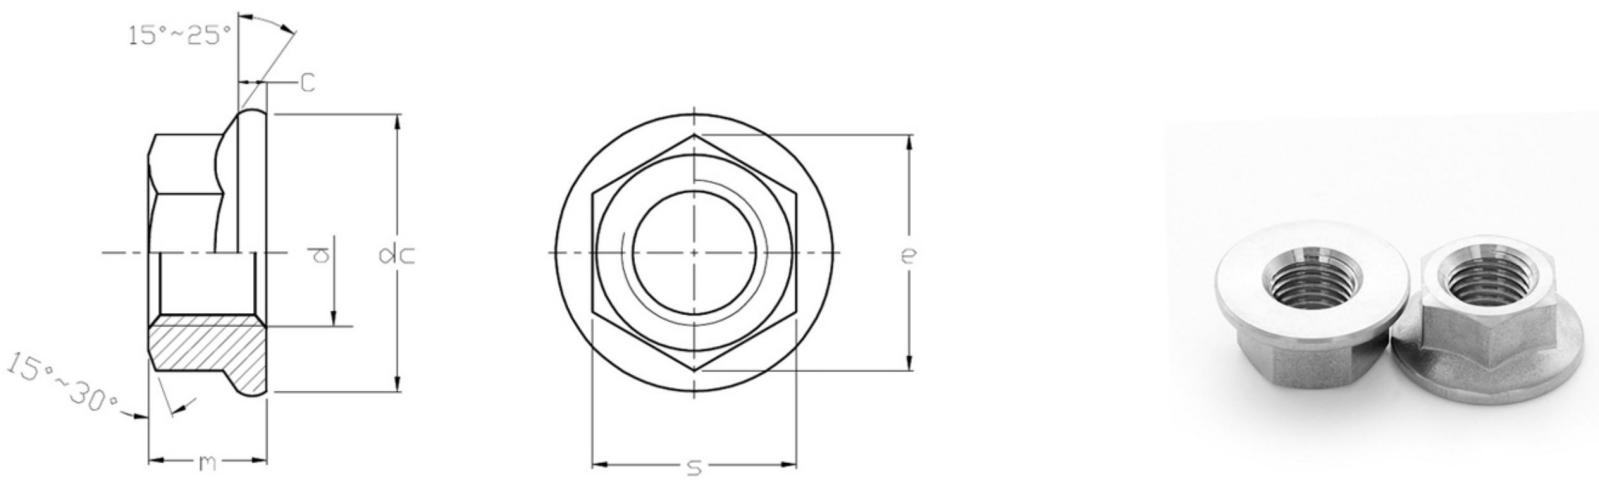 Porcas de flange hexagonal ISO 4161